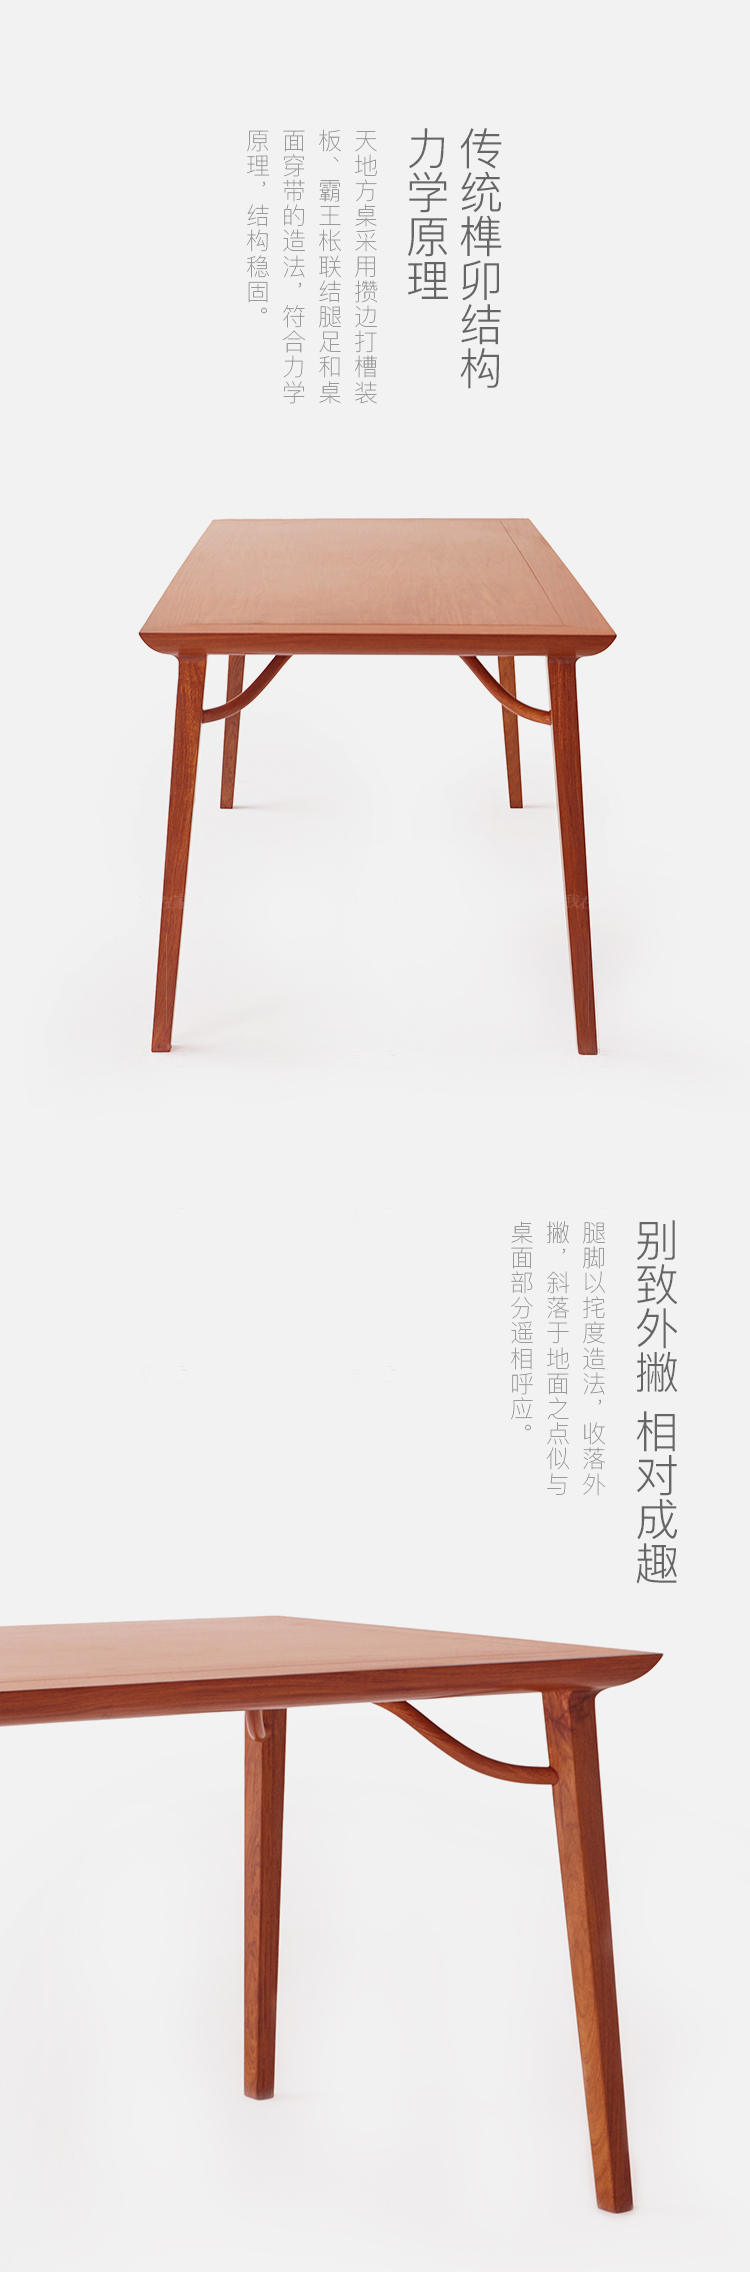 新中式风格霸王撑天地方桌的家具详细介绍